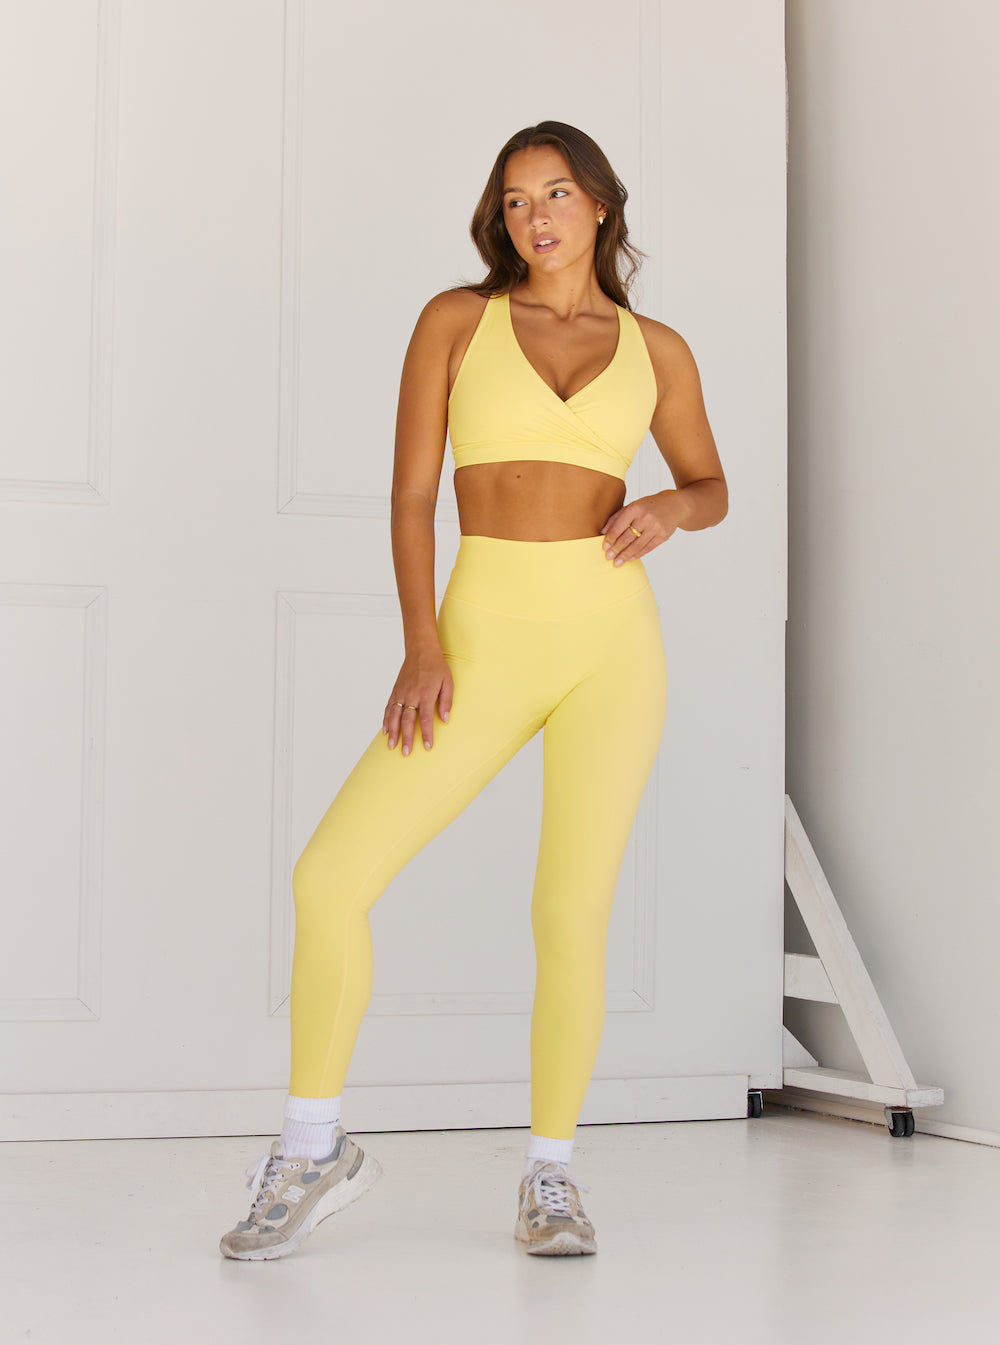 Sykooria Womens Sports Shorts Lounge Pyjama Bottoms High Waisted Elastic  Running Yoga Workout Jogger Athletic Shorts - ShopStyle